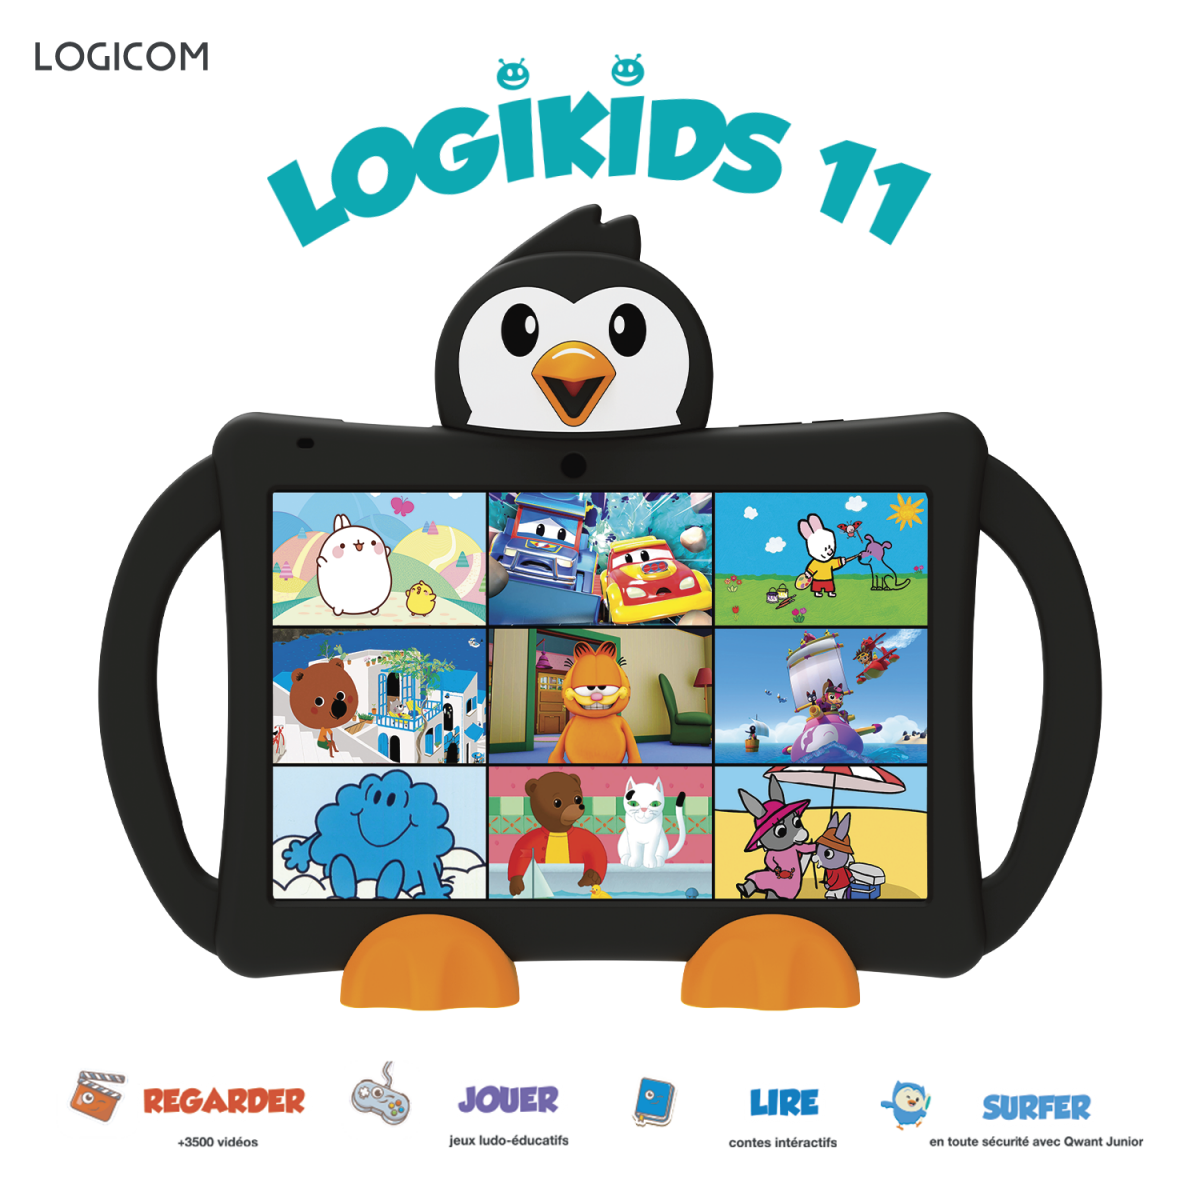 Logicom  Tablette avec contenu pour enfants Logikids 11